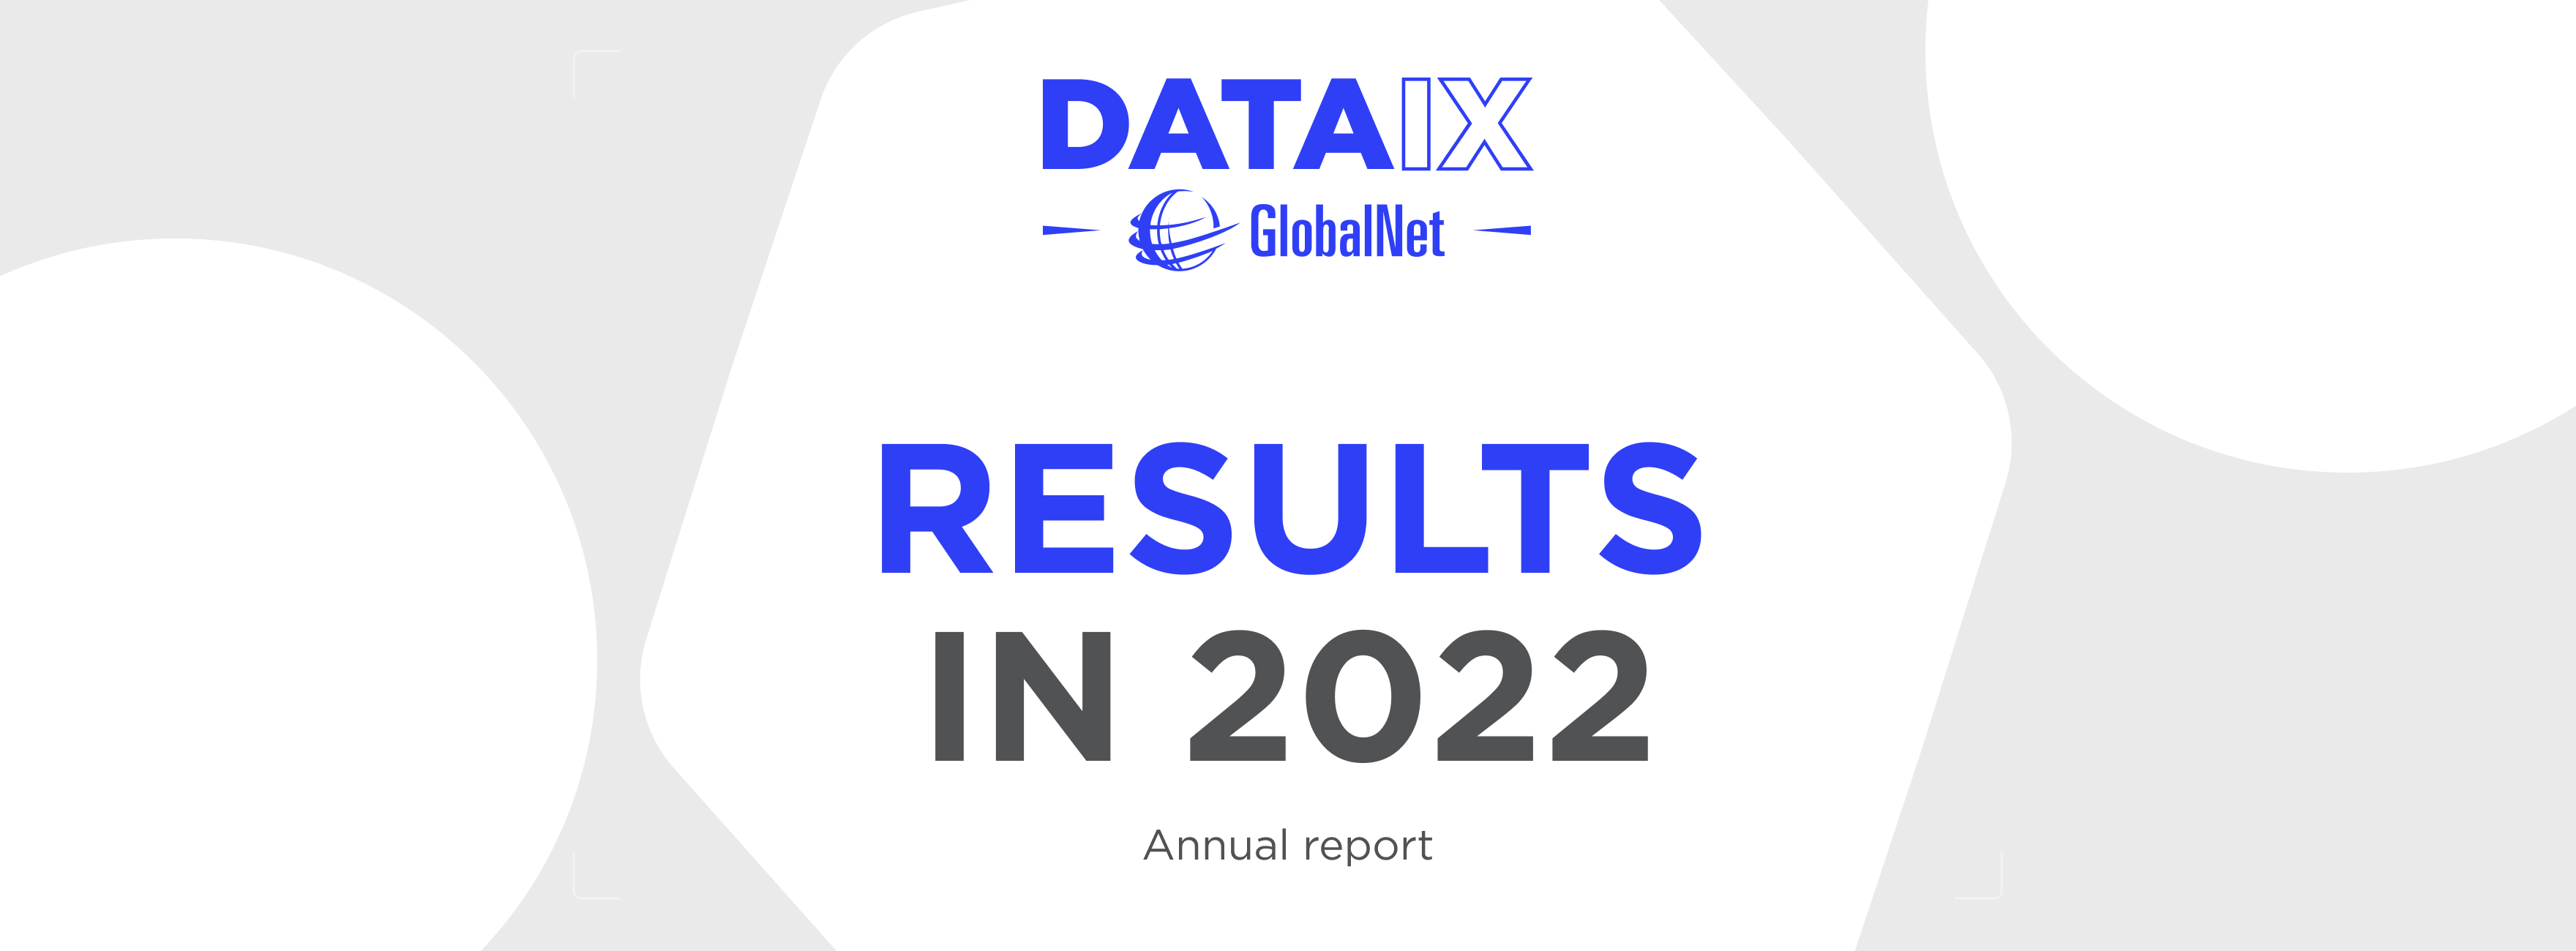 Річний звіт GlobalNet/DATAIX за 2022 рік